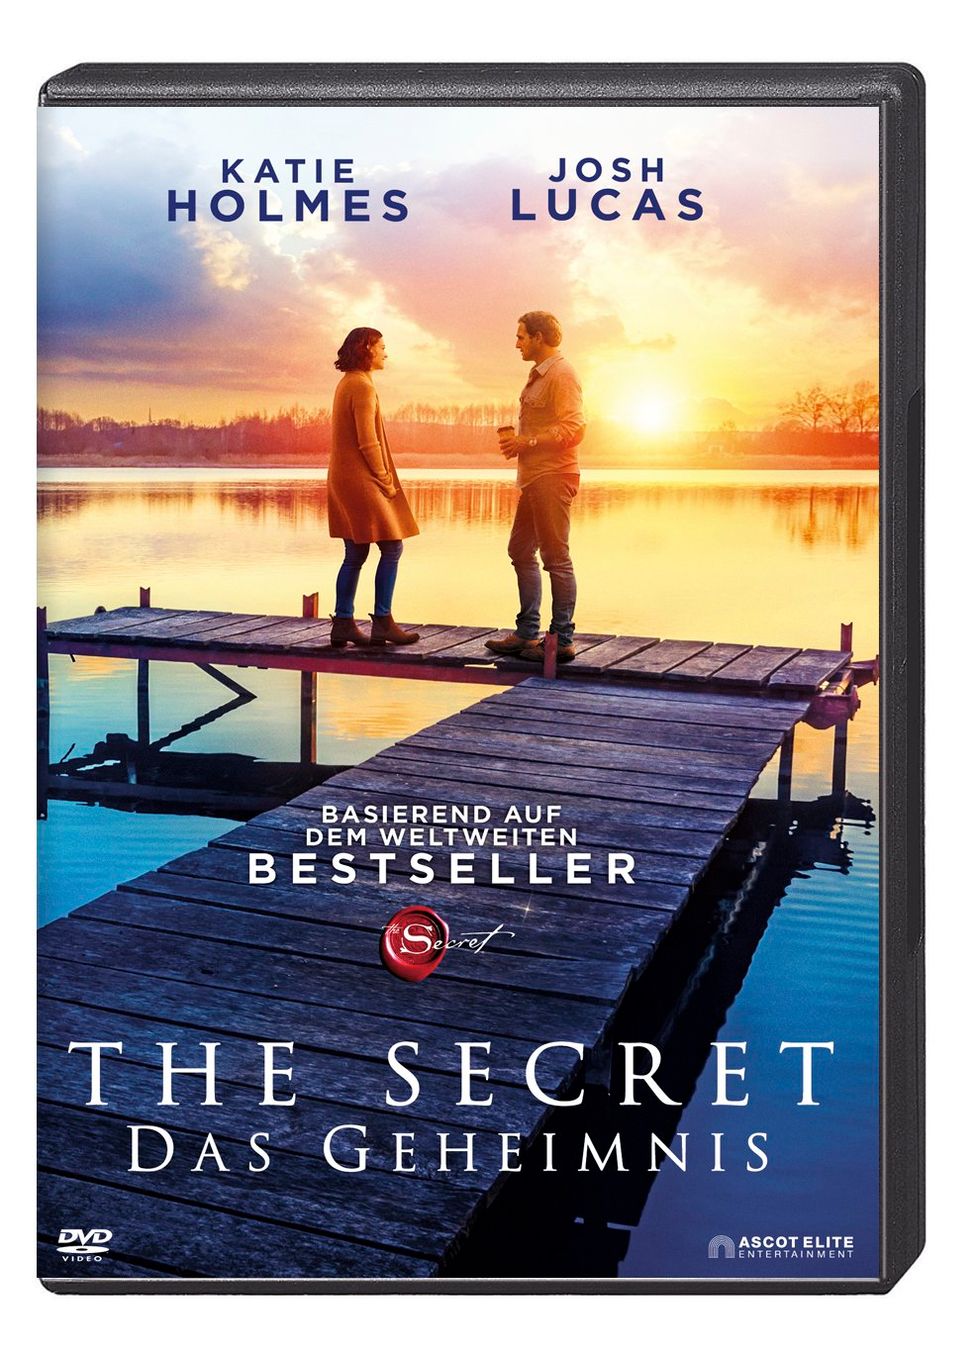 The Secret - Das Geheimnis. Traue dich zu träumen Film | Weltbild.ch